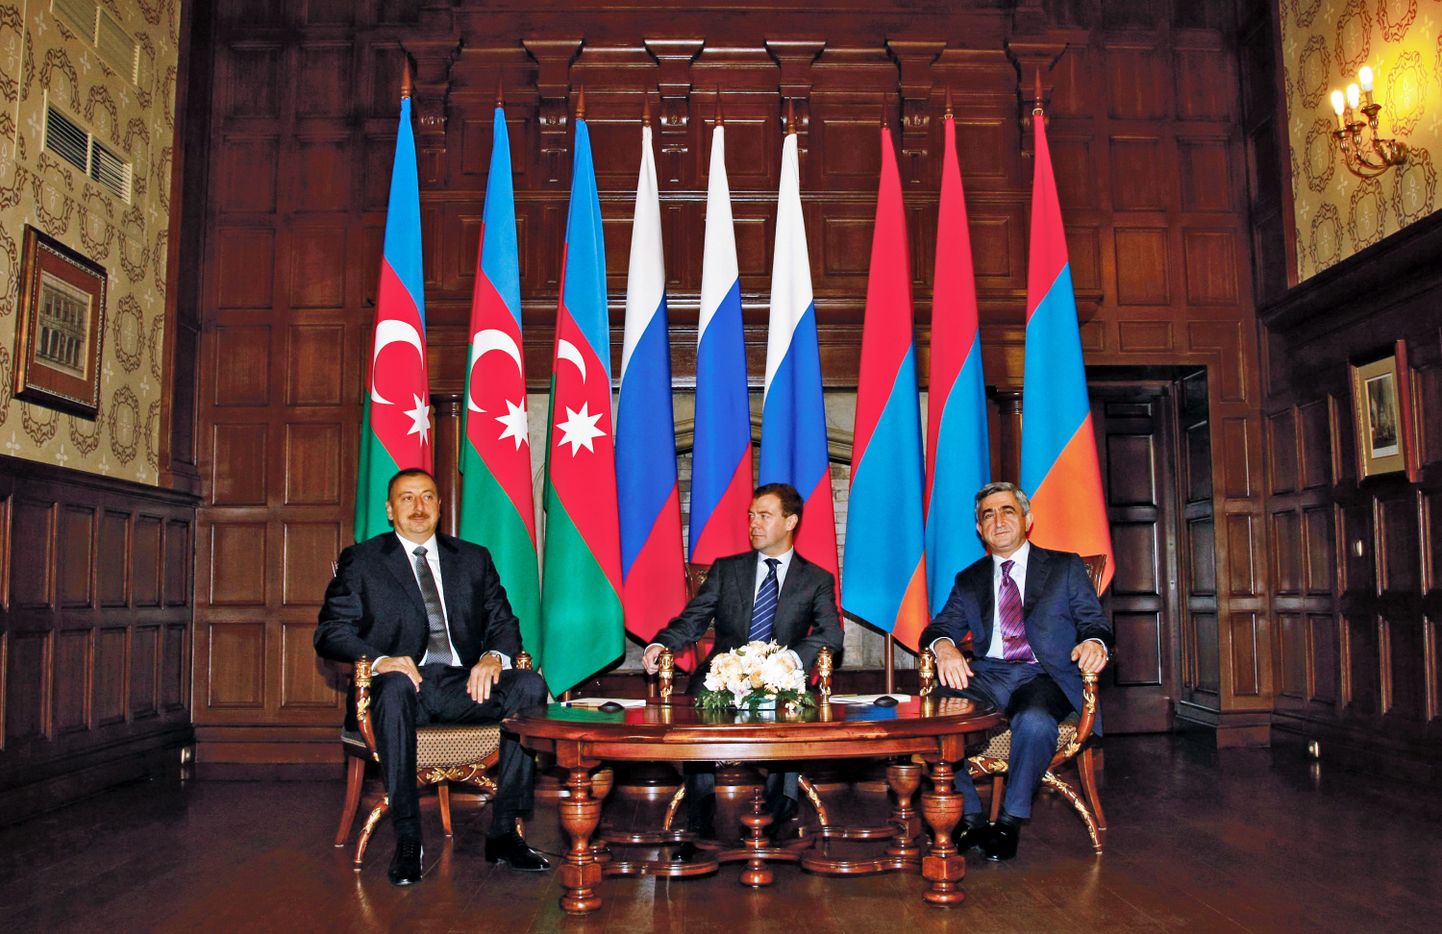 Venemaa president Dmitri Medvedev võõrustas novembris Moskvas oma kolleege Aserbaidžaanist ja Armeeniast, et sobitada leppimist kahe riigi vahel Mägi-Karabahhis.